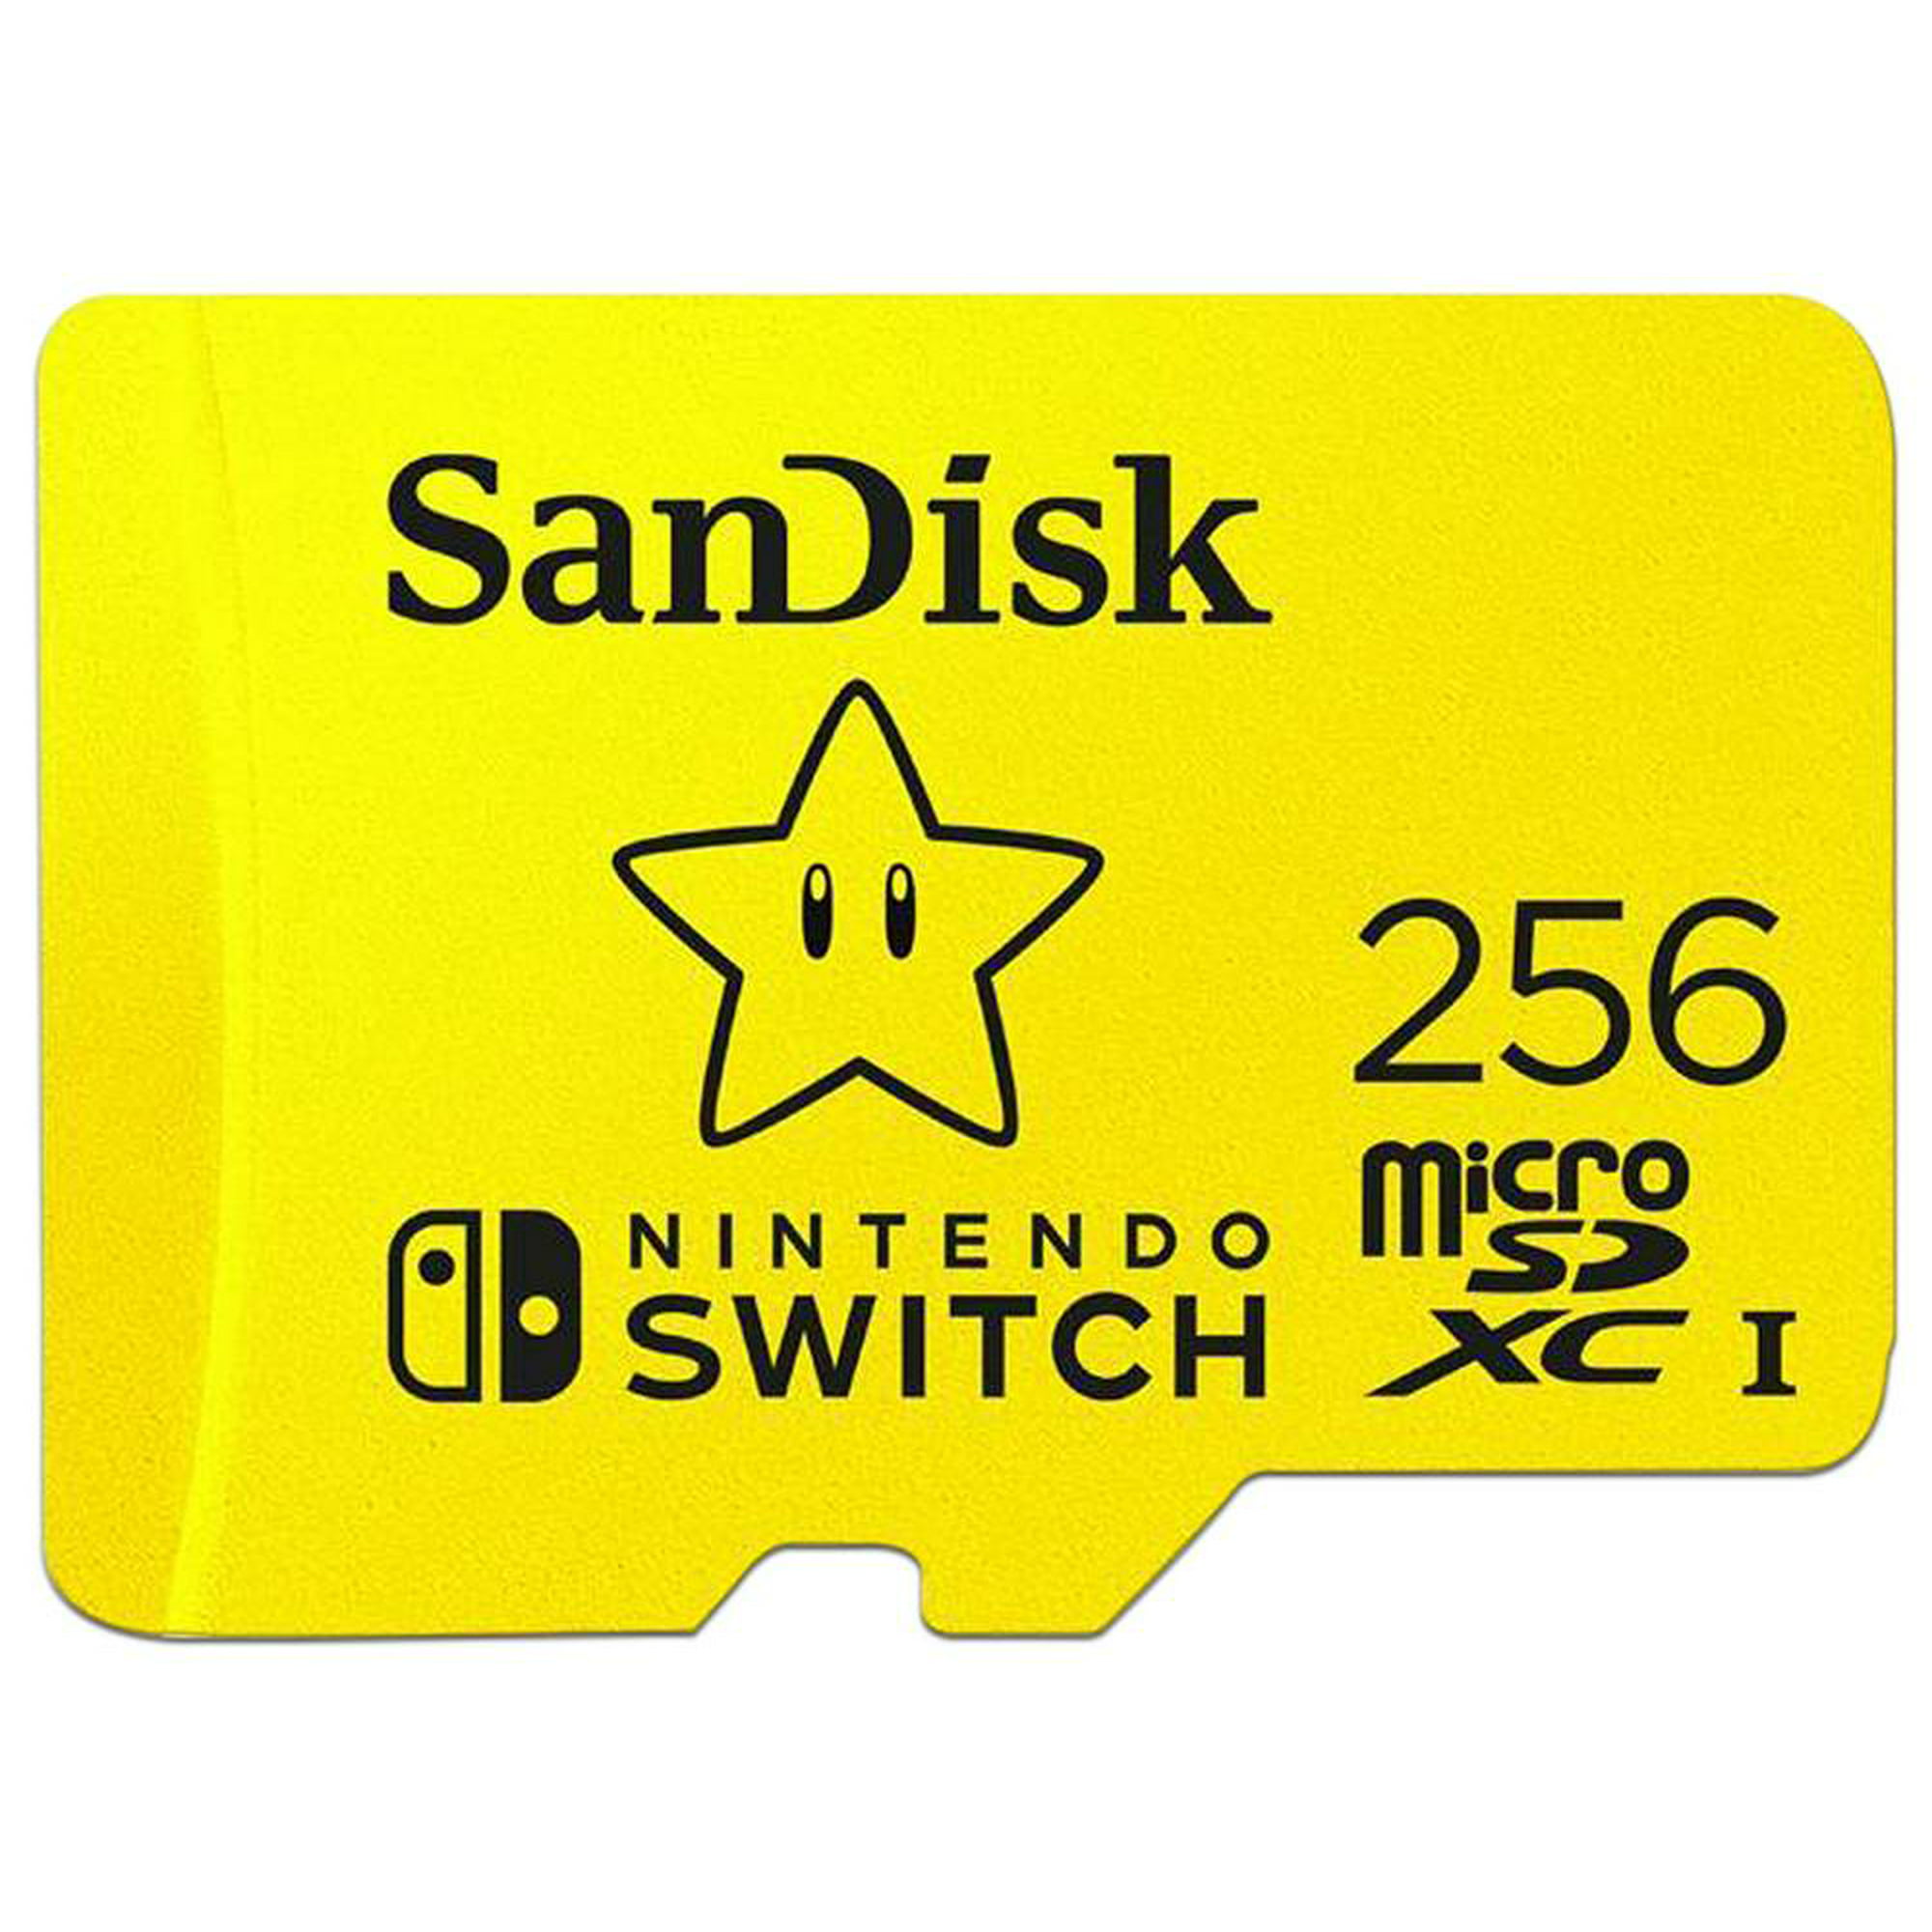 Loza de barro Pies suaves letra Unidad MicroSDXC UHS-I para Nintendo Switch de 256GB. SanDisk  SDSQXAO-256G-GNCZN | Walmart en línea